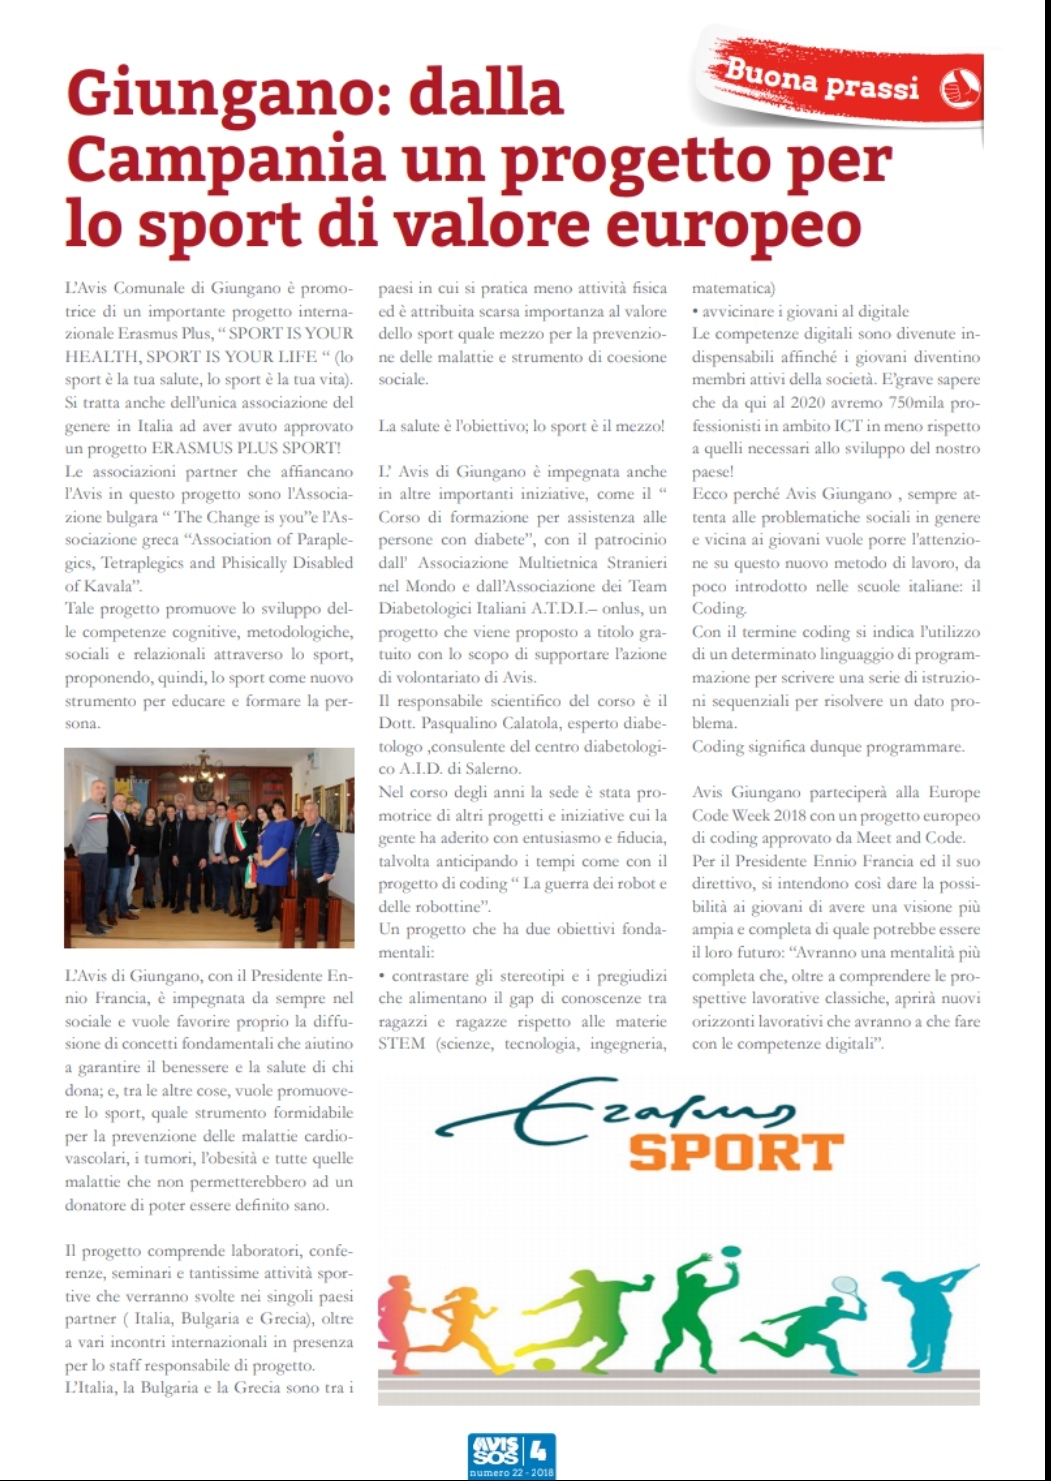 Avis Nazionale parla del nostro progetto europeo per lo sport